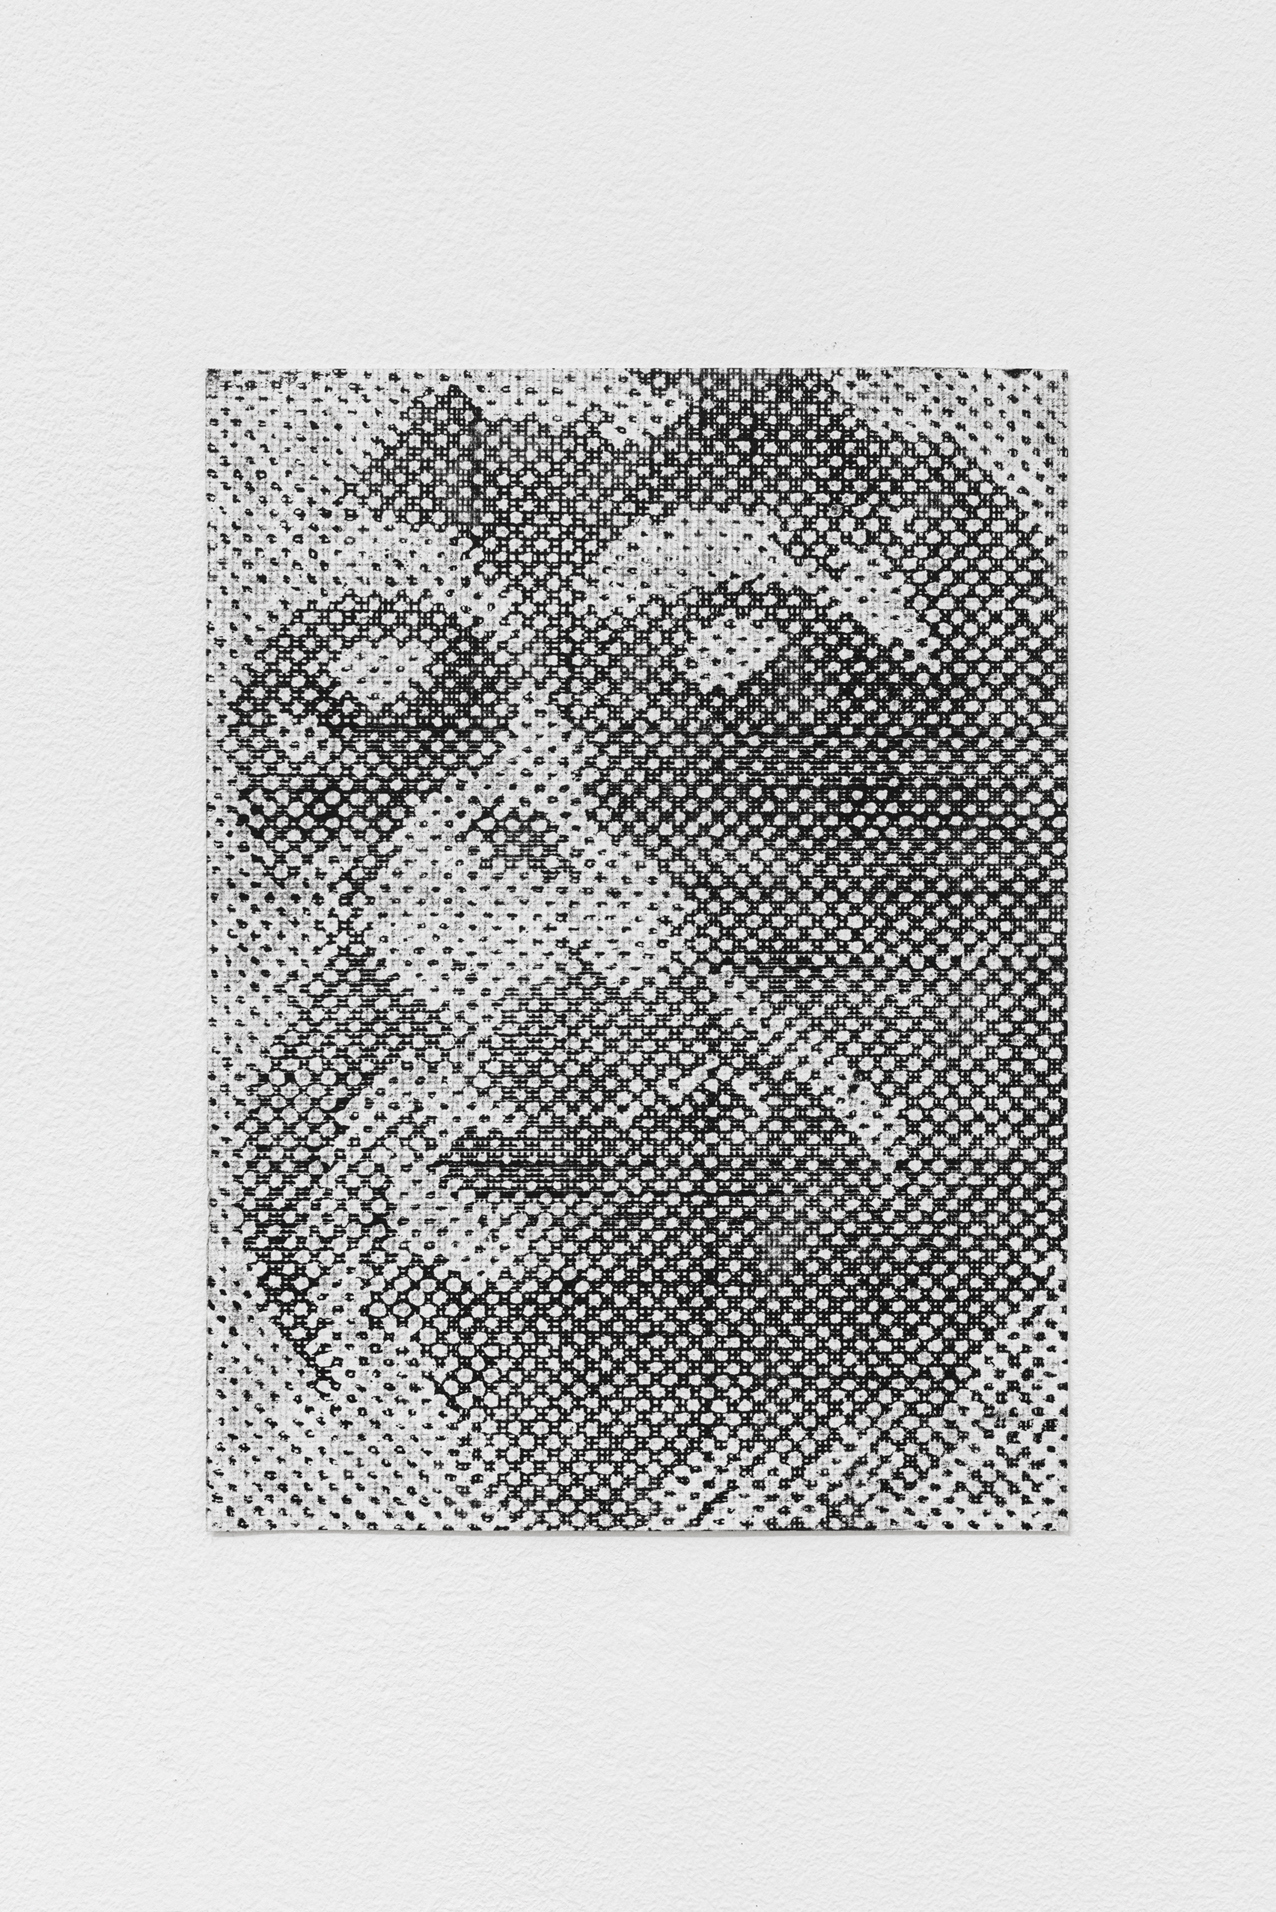 Maxime Le Bon, TchantchÃ¨s #3, 2021, oil and graphit on paper, 15 x 18 cm